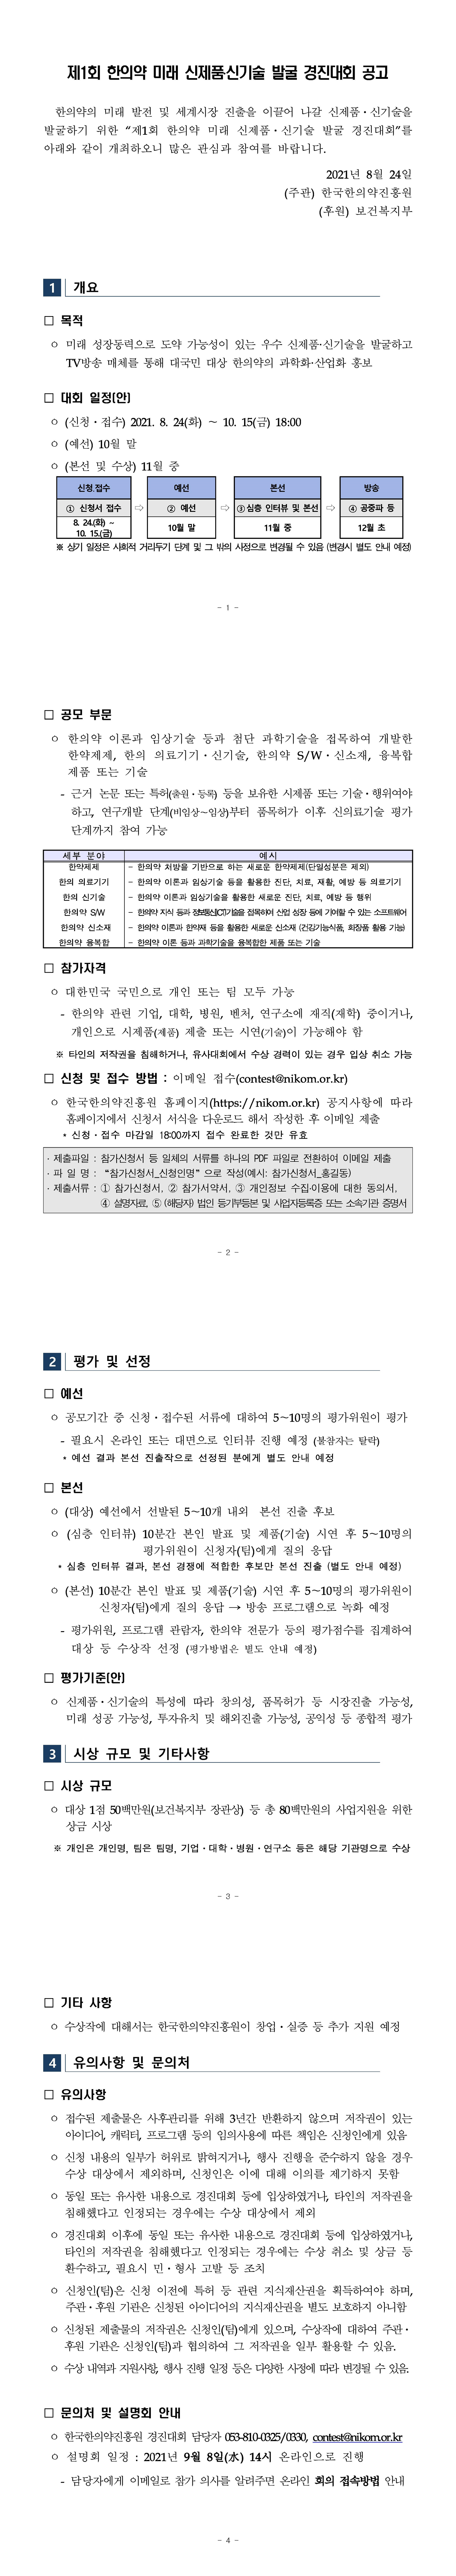 1. 한의약 미래 신제품_신기술 발굴 경진대회 모집공고문.jpg